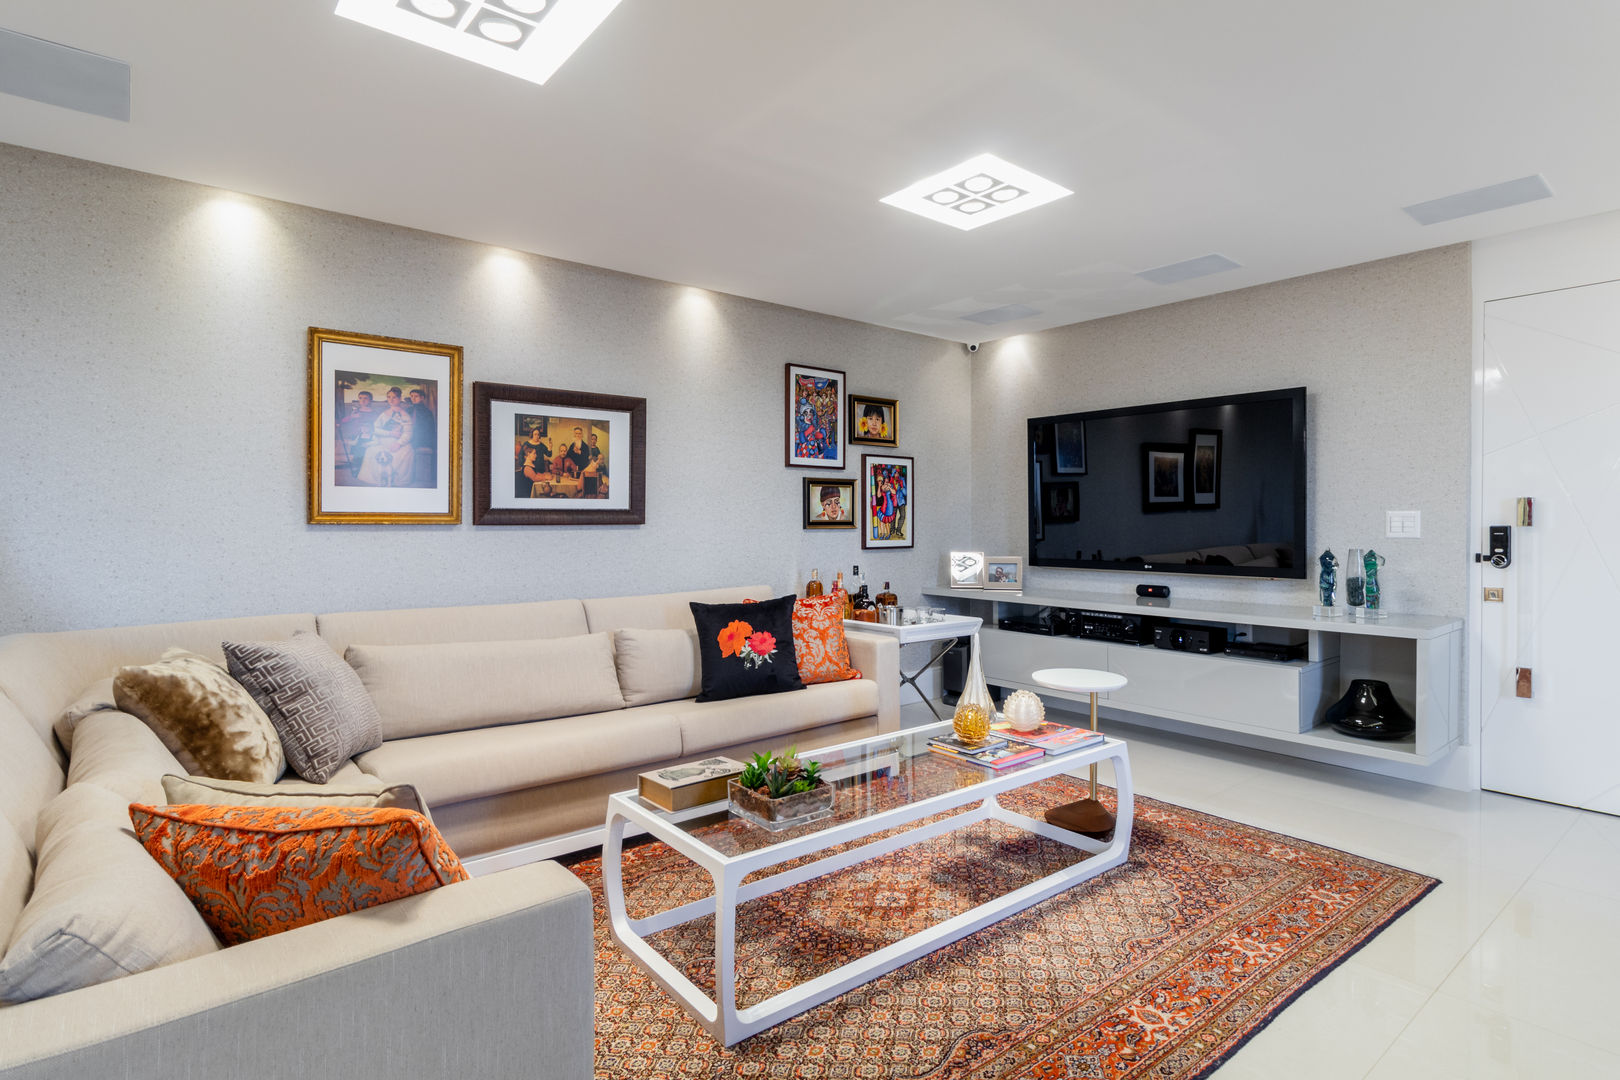 Reforma em Apartamento com toque classico e moderno, em tons claros, Arquitetura Sônia Beltrão & associados Arquitetura Sônia Beltrão & associados Modern living room